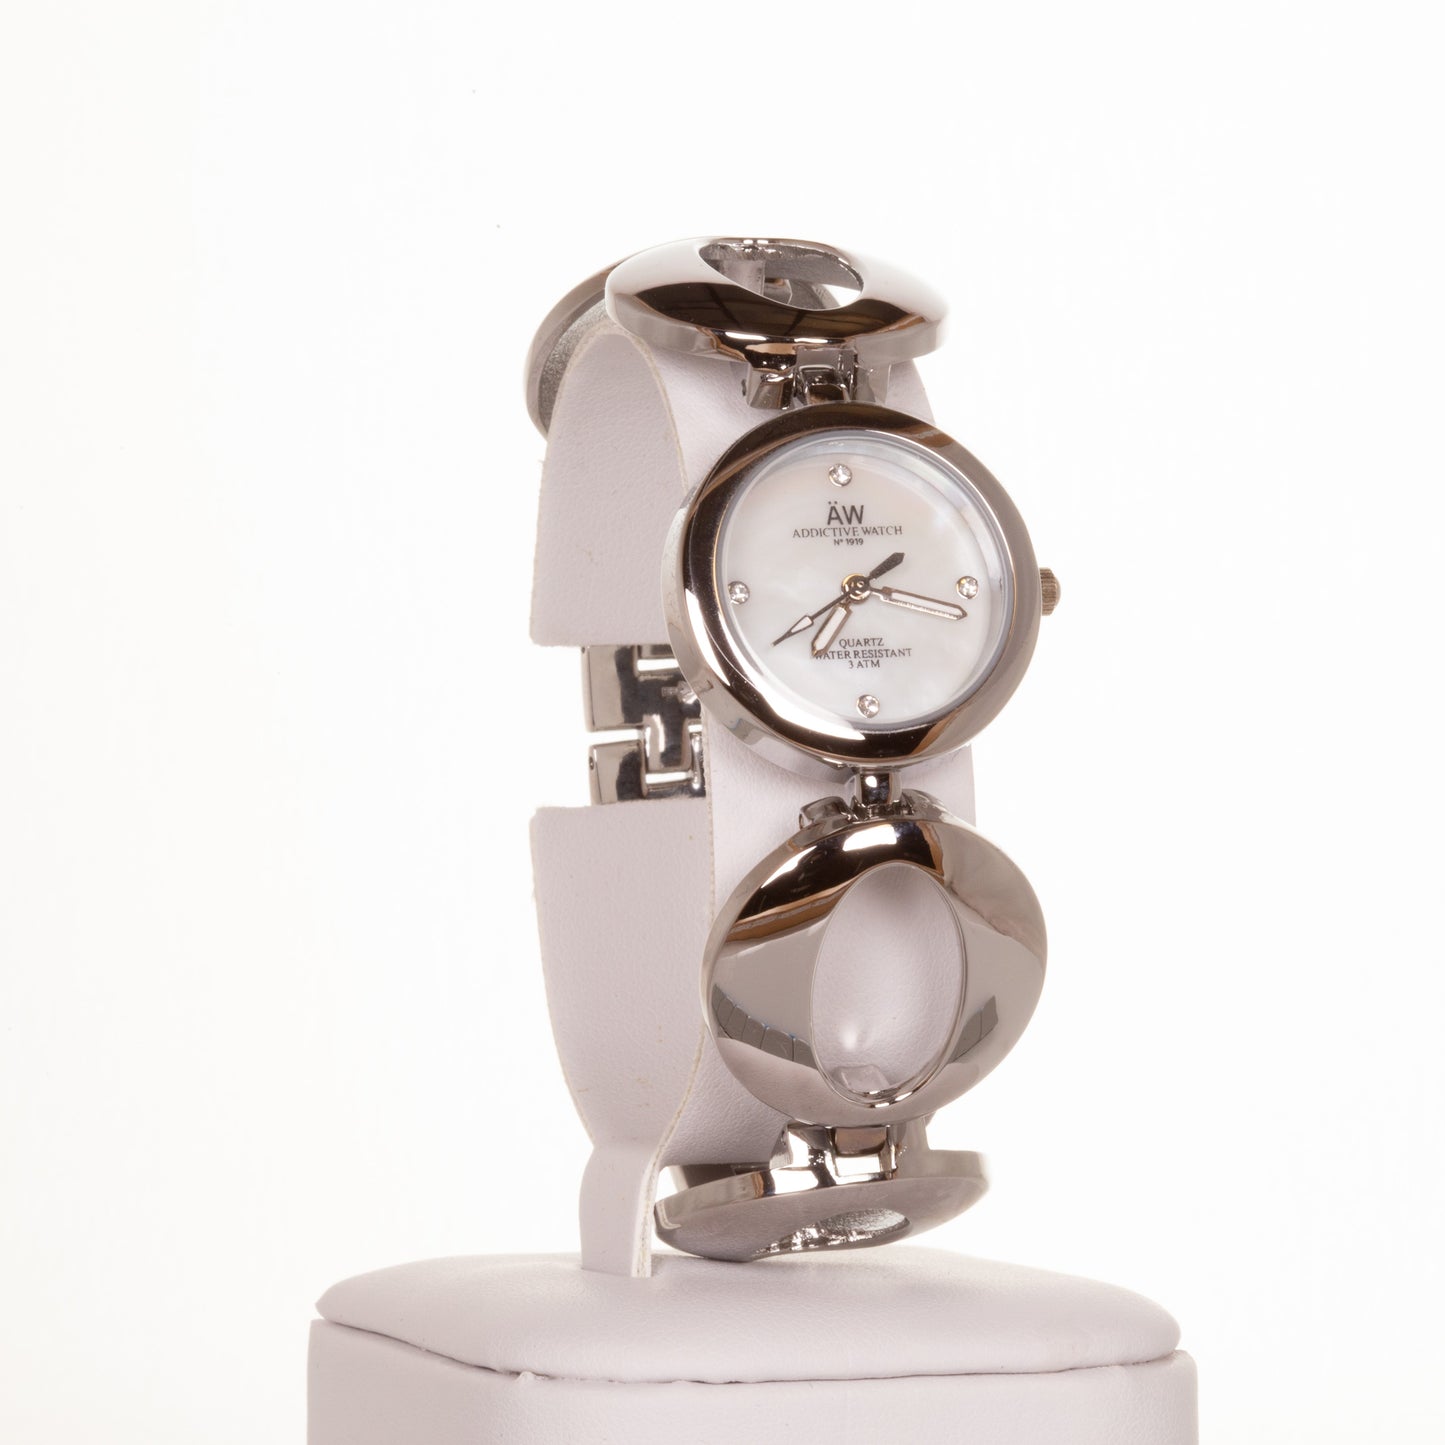 AW dámské hodinky ve stříbrné barvě s řemínkem se symbolem nekonečna a 4 krystaly křemenu